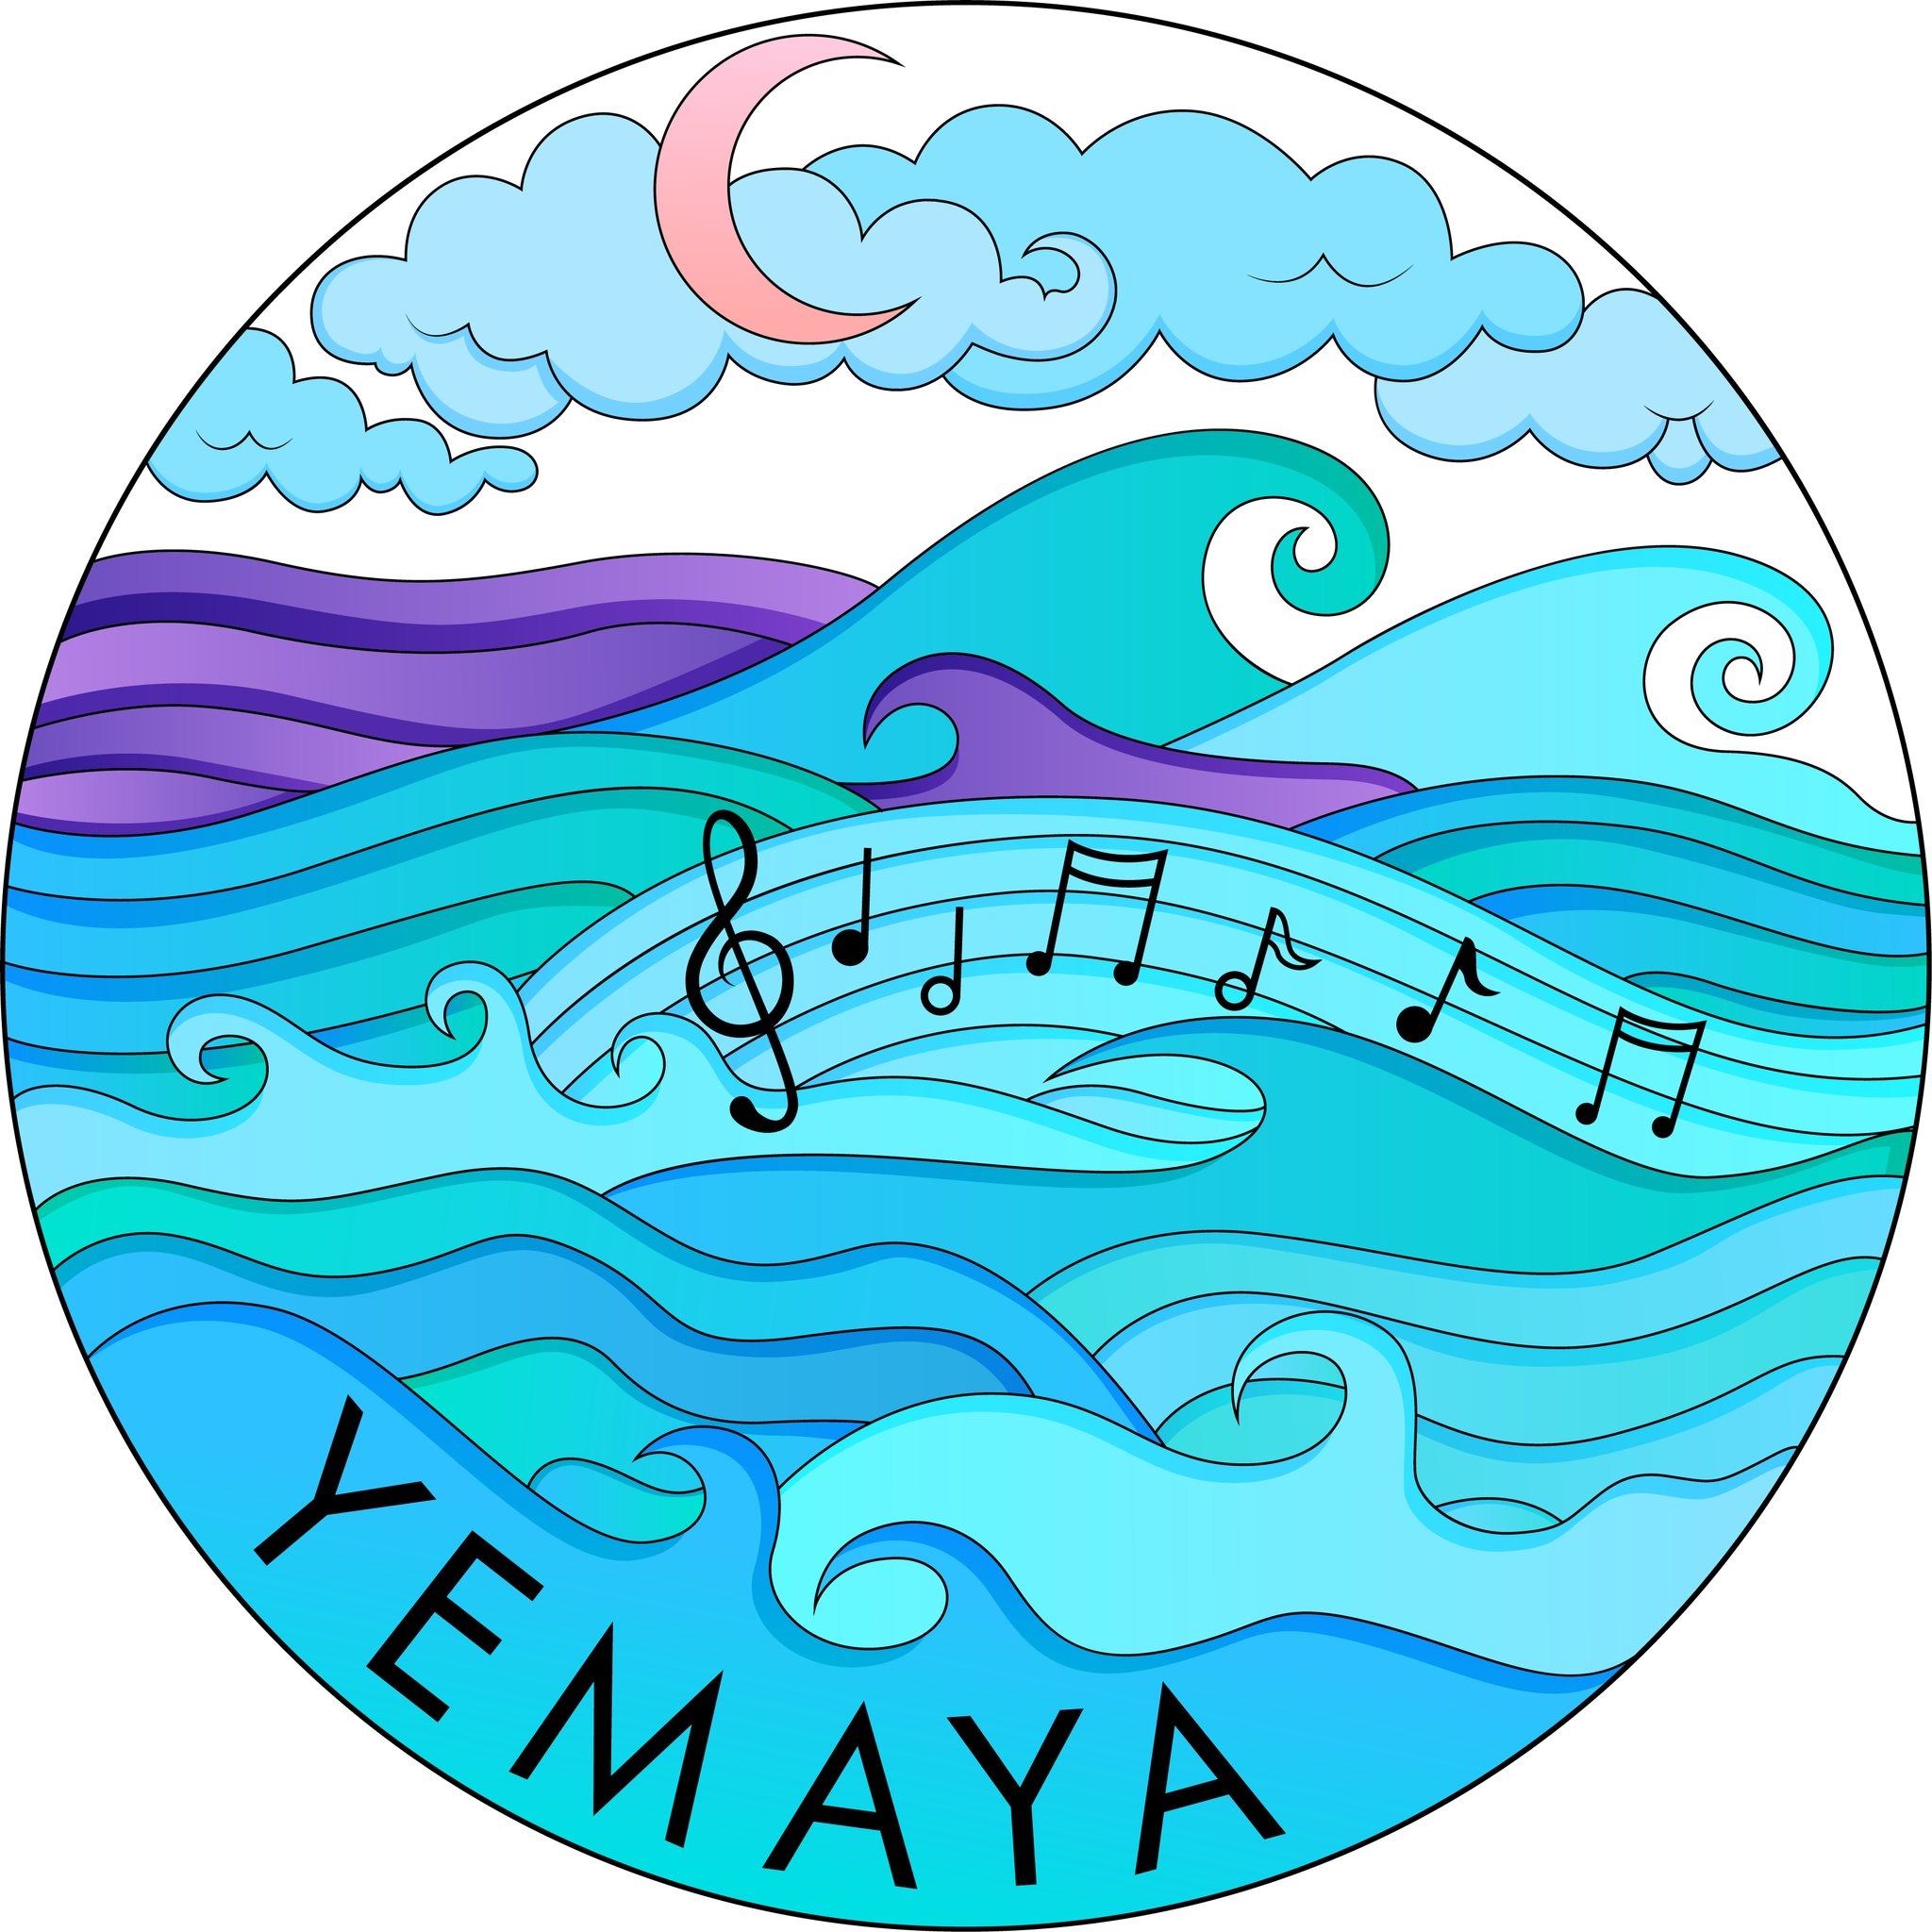 YEMAYA's logo